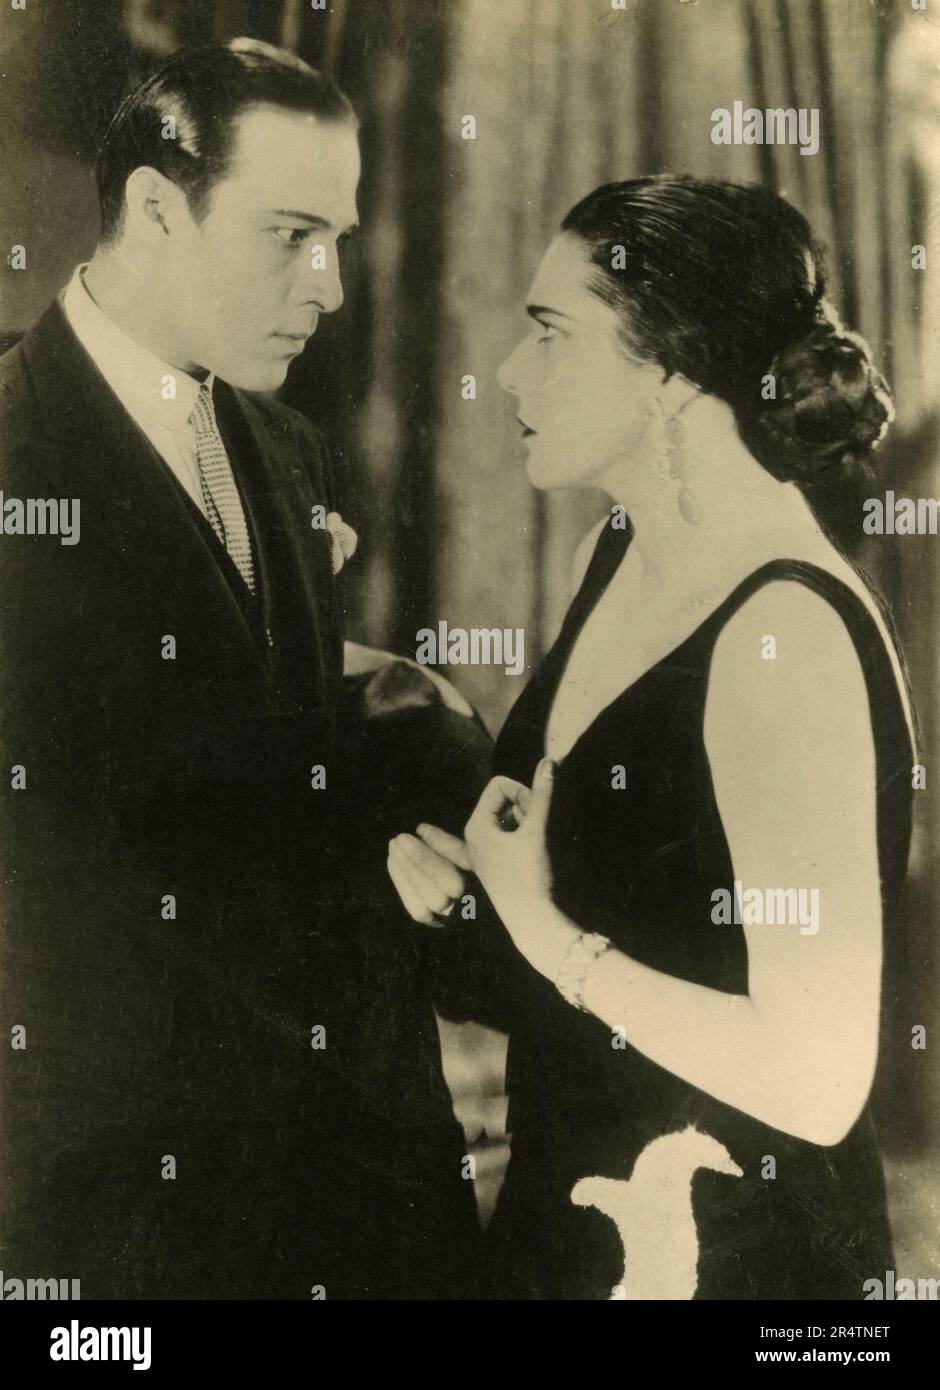 Les acteurs italiens-américains Rudolph Valentino et Nita Naldi dans le film Cobra, 1925 Banque D'Images